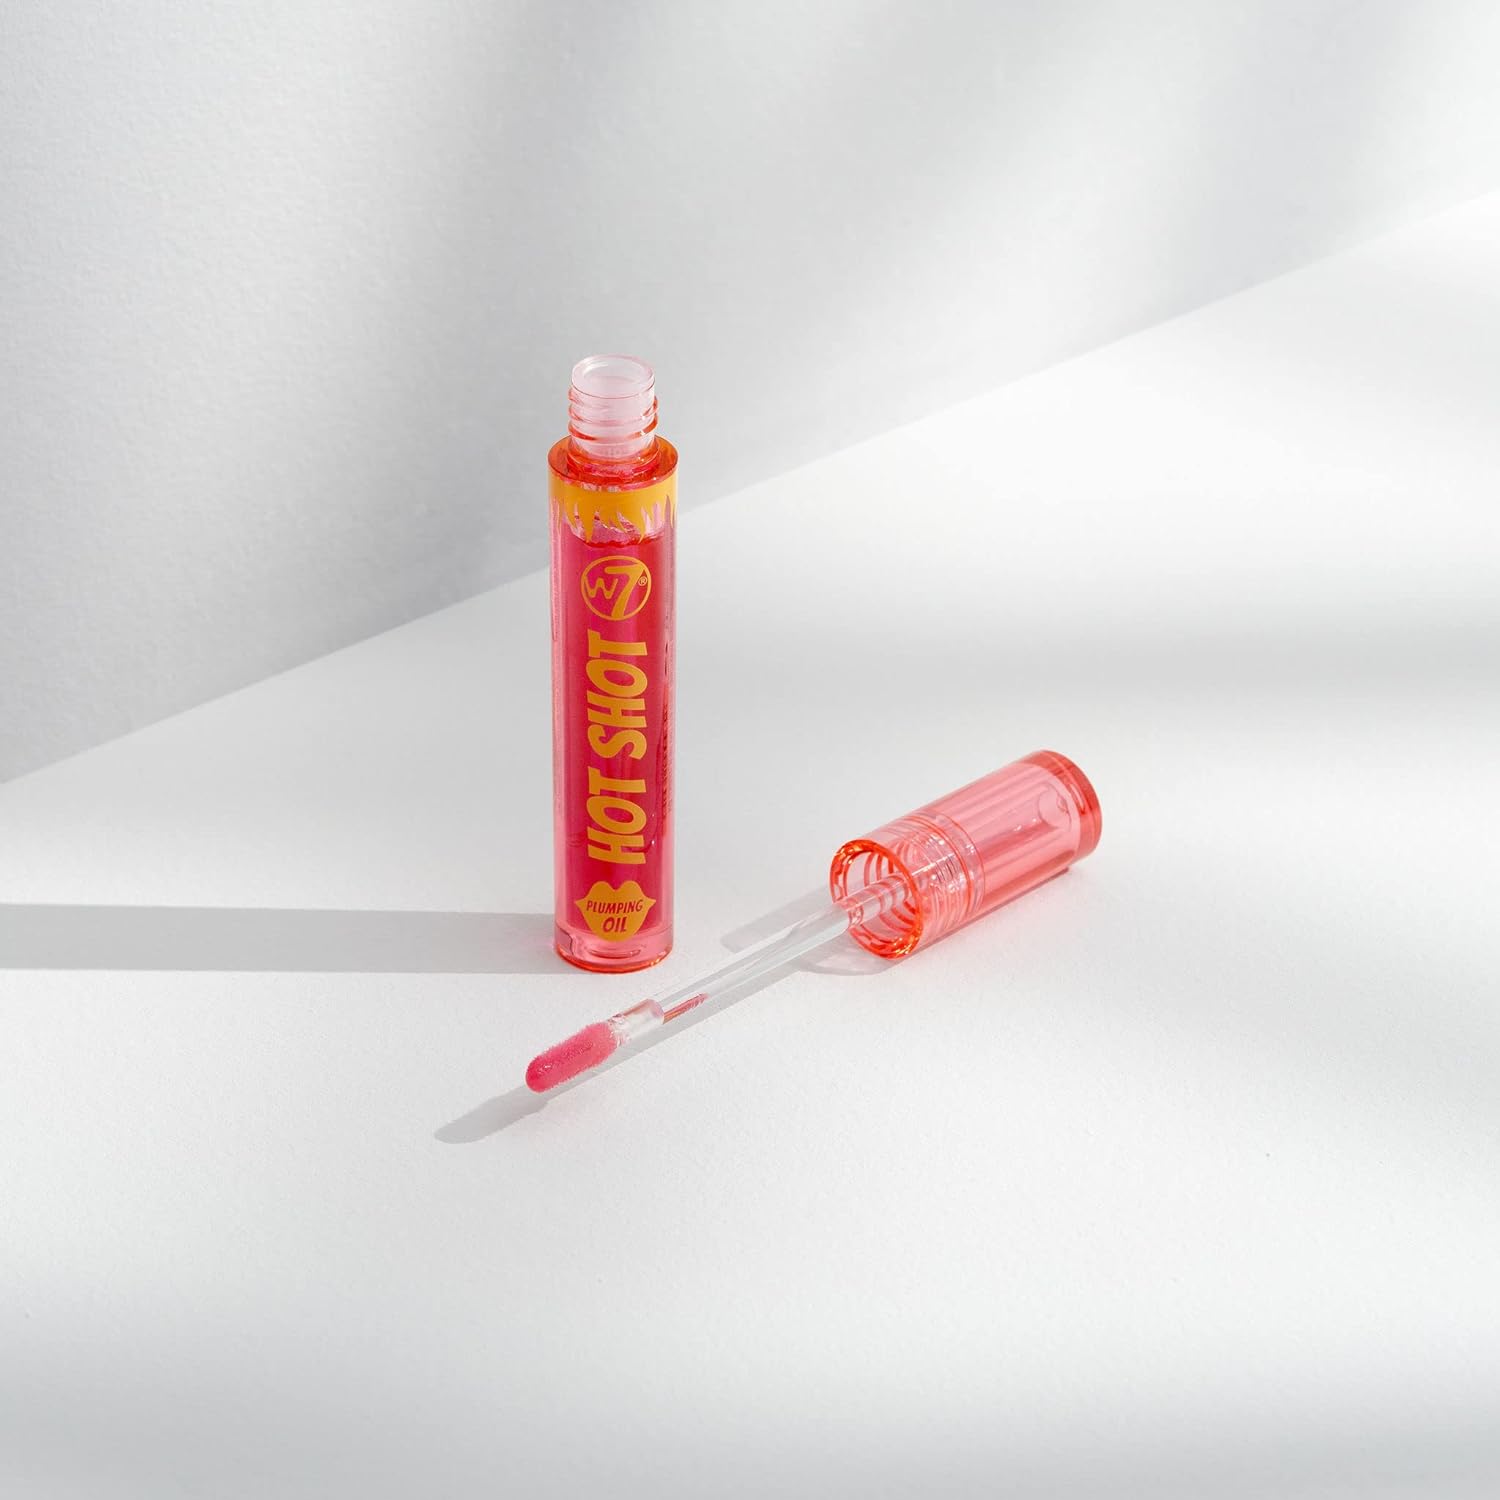 2 Pack Hot Shot Plumping Oil Bundle - Enhancing & Repairing Plump Effect For Fuller Lips